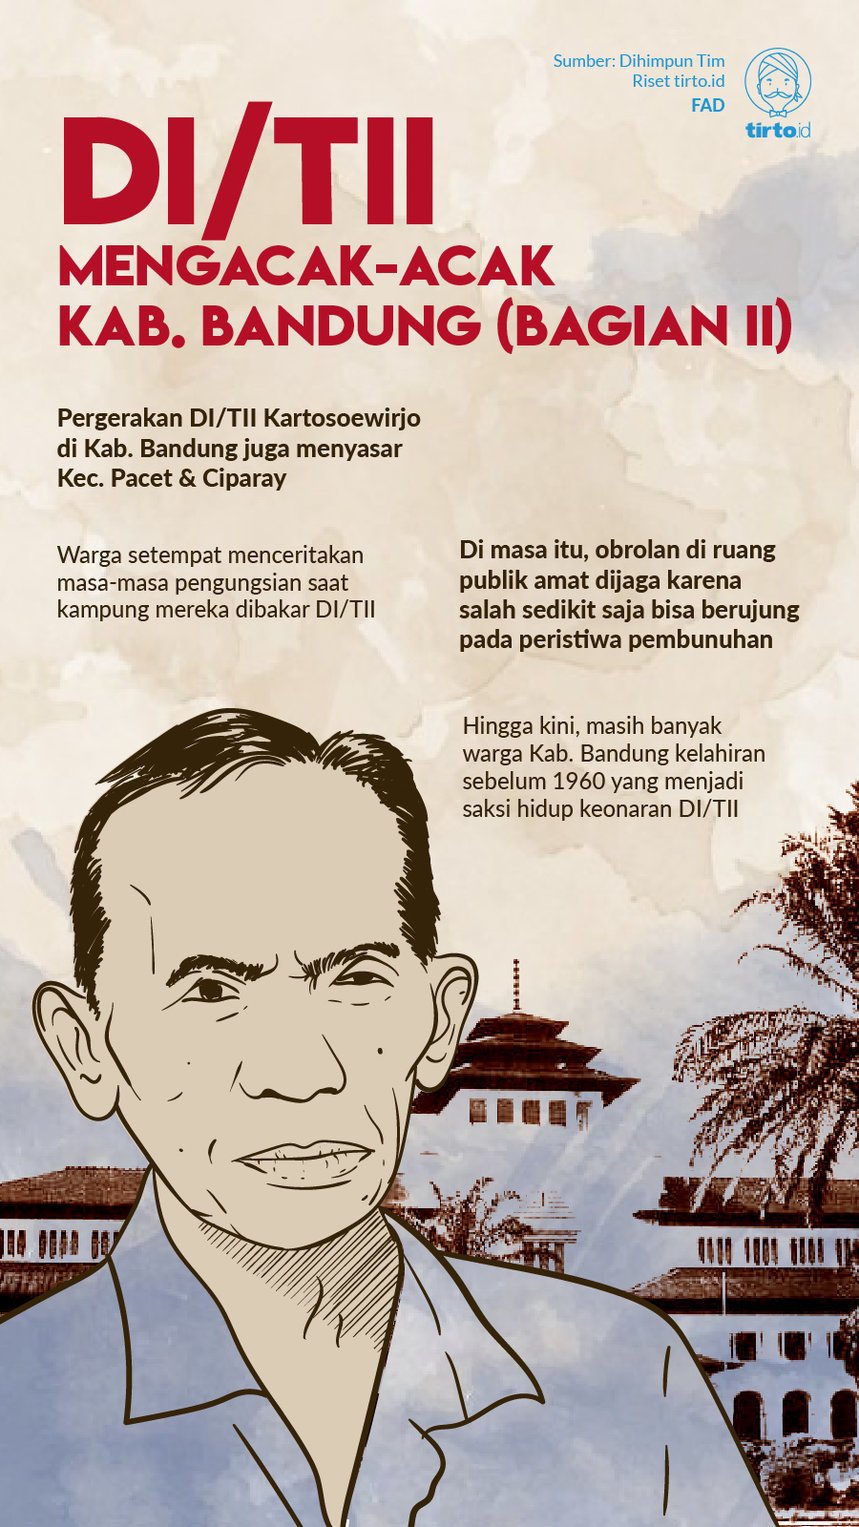 Infografik DI/TII Mengacak-acak Kab Bandung (Bagian II)